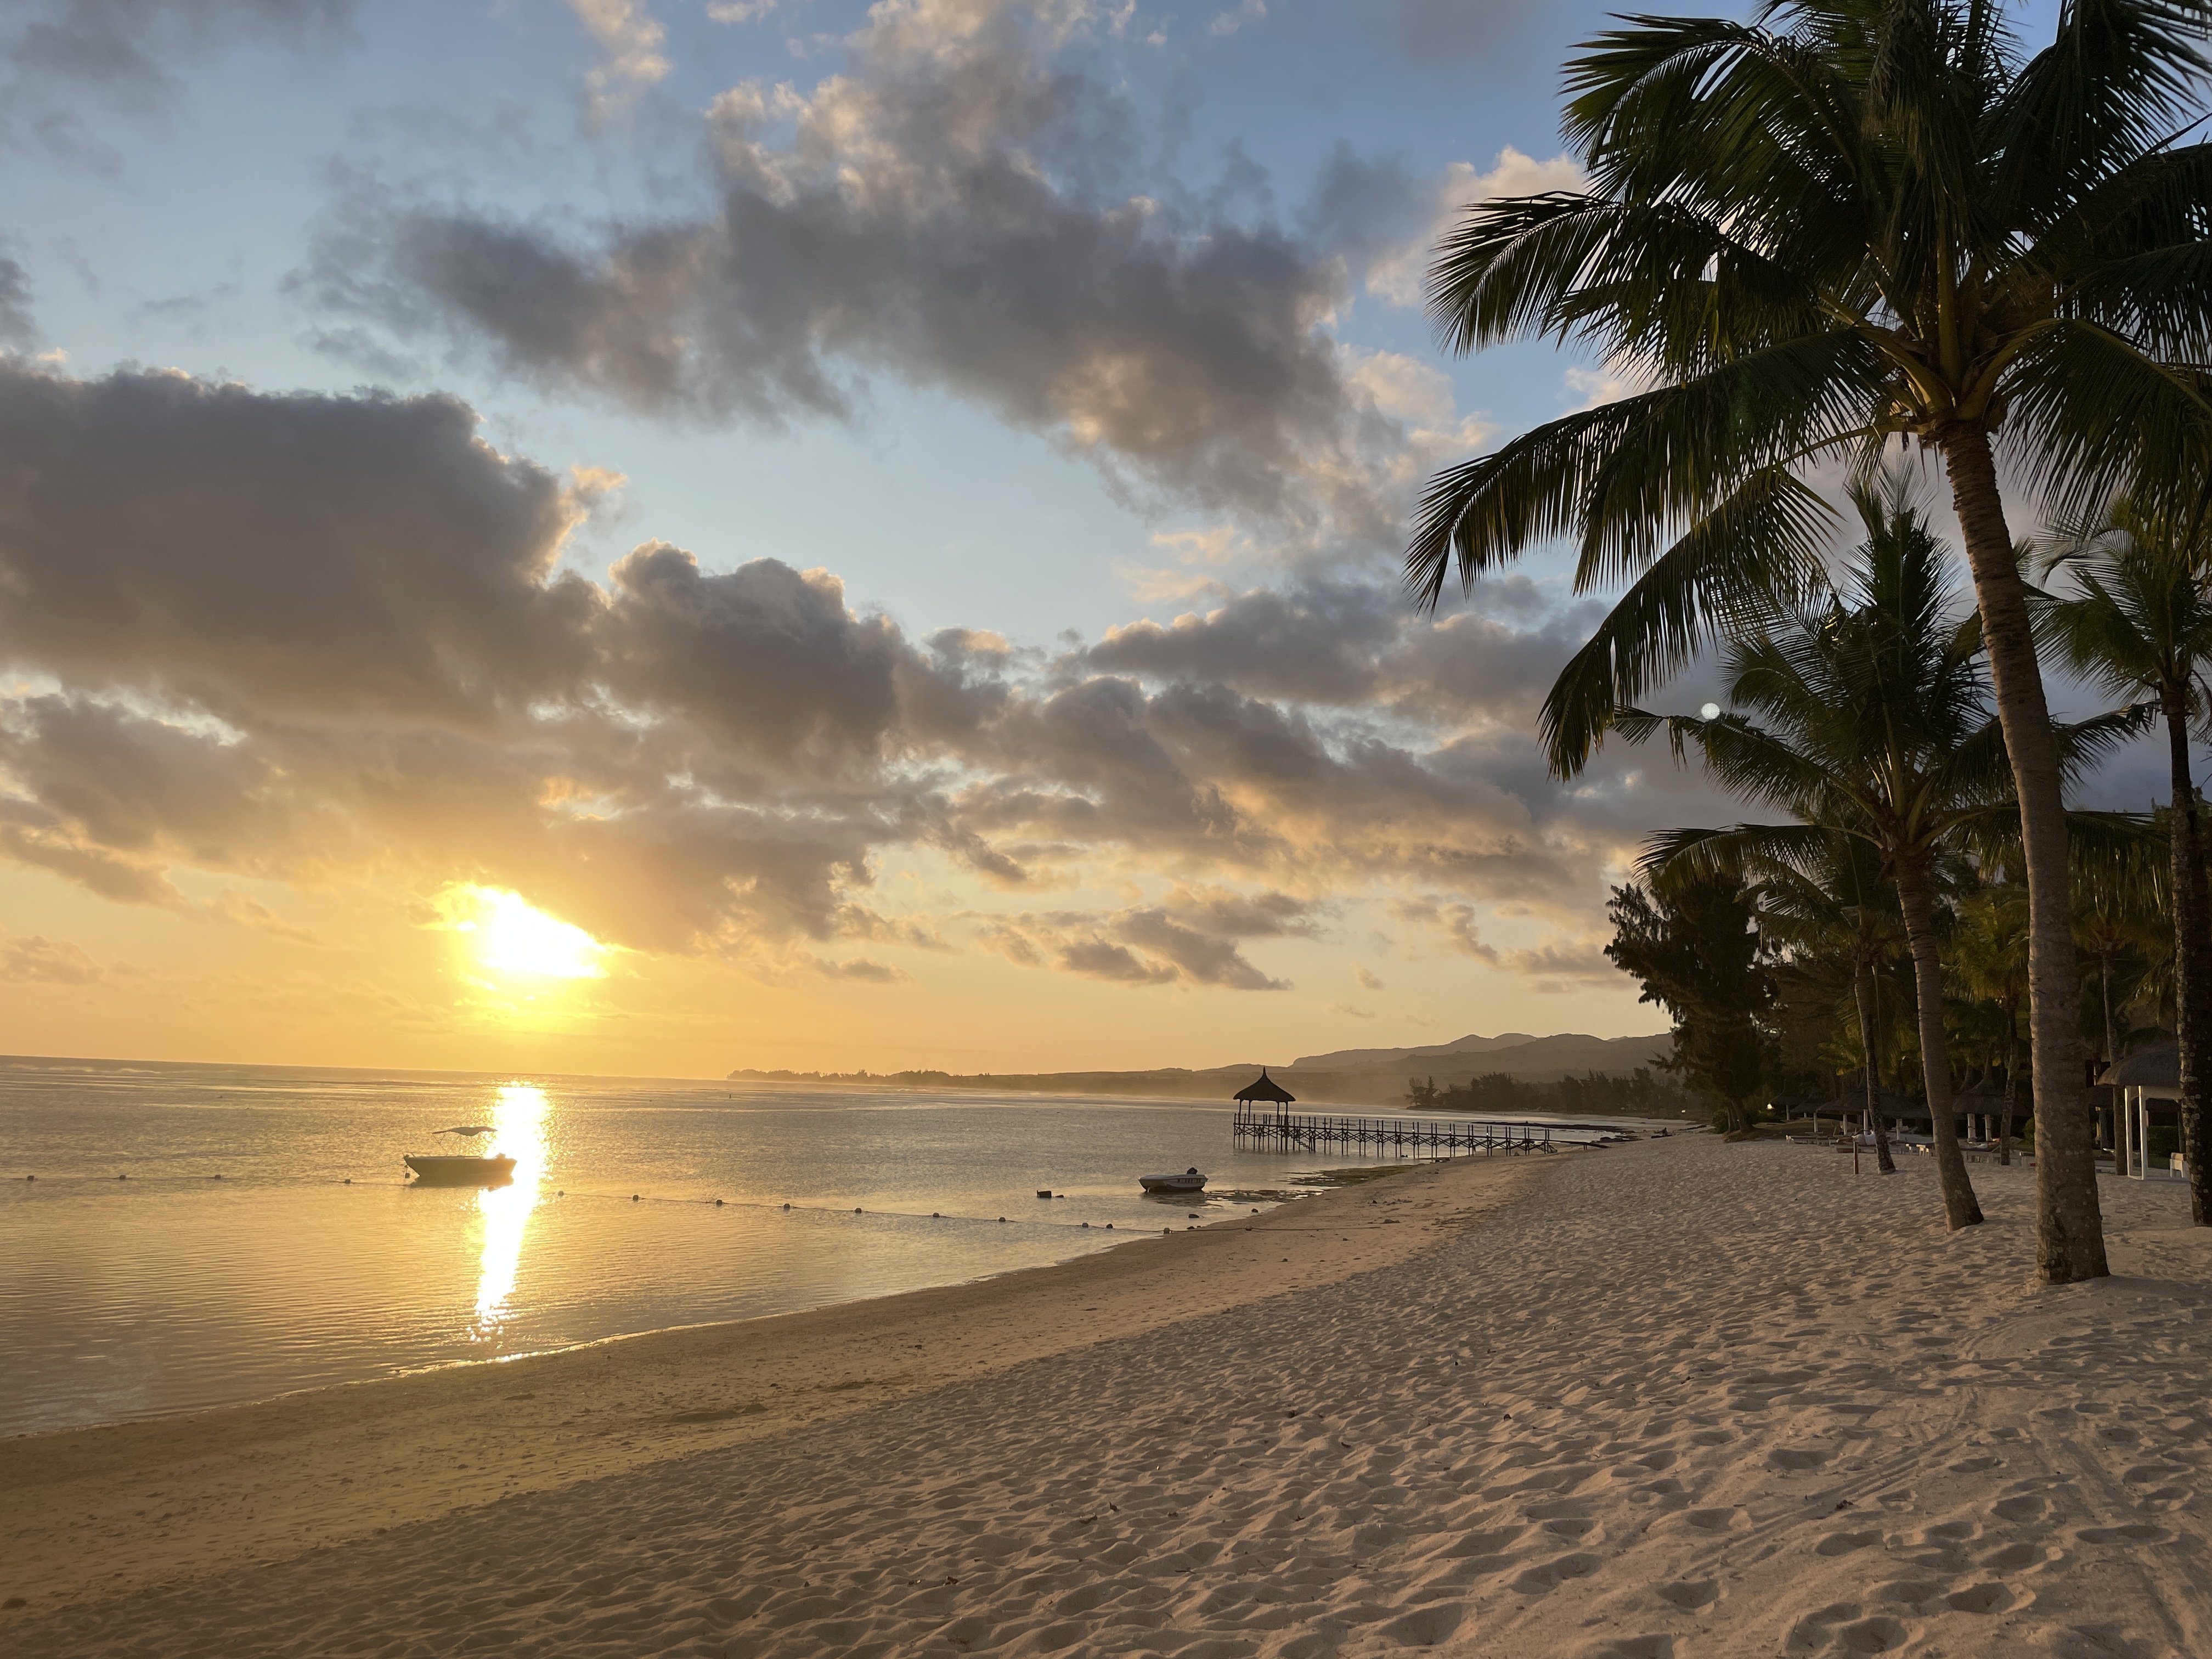 Urlaub mit Kleinkind - Reisen mit Kleinkindern - Fernreise mit Kleinkind - Mauritius - Sonnenuntergang am Strand